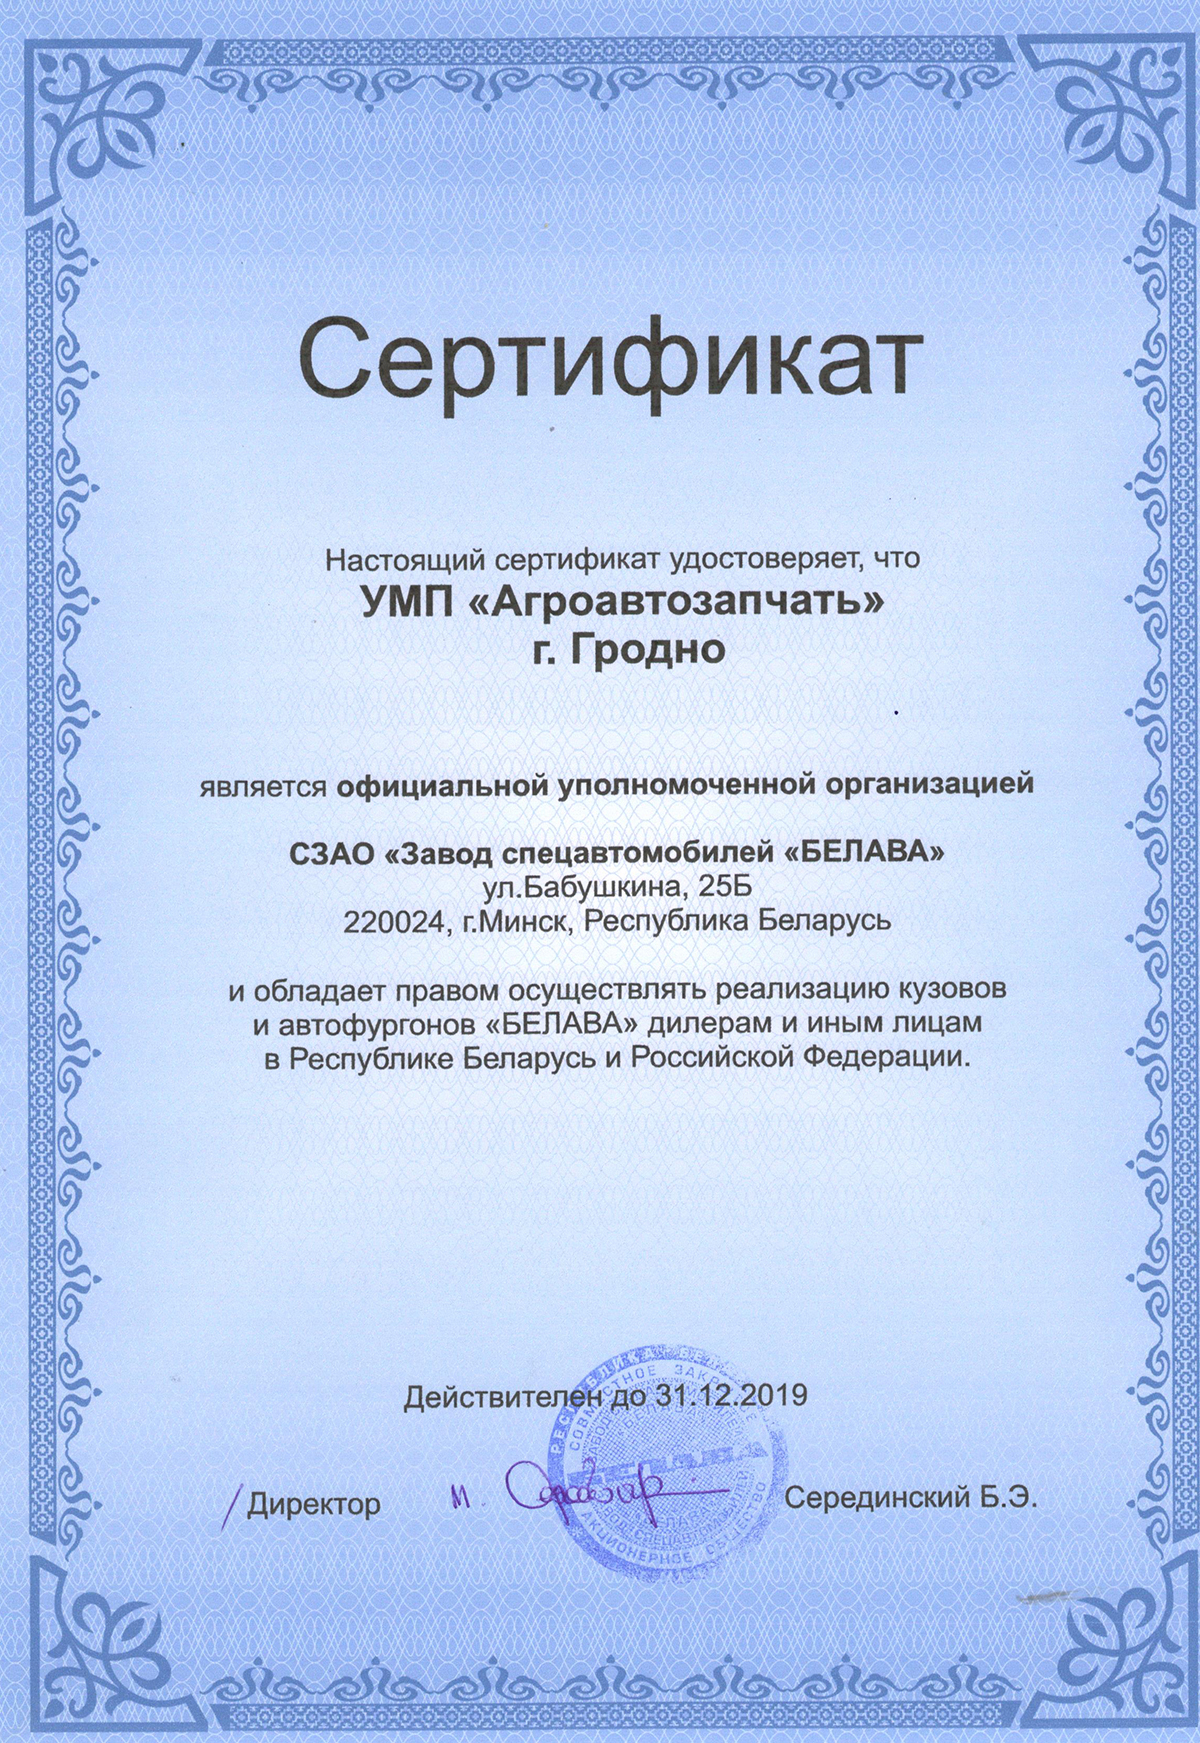 Сертификат на реализацию Белава 2019